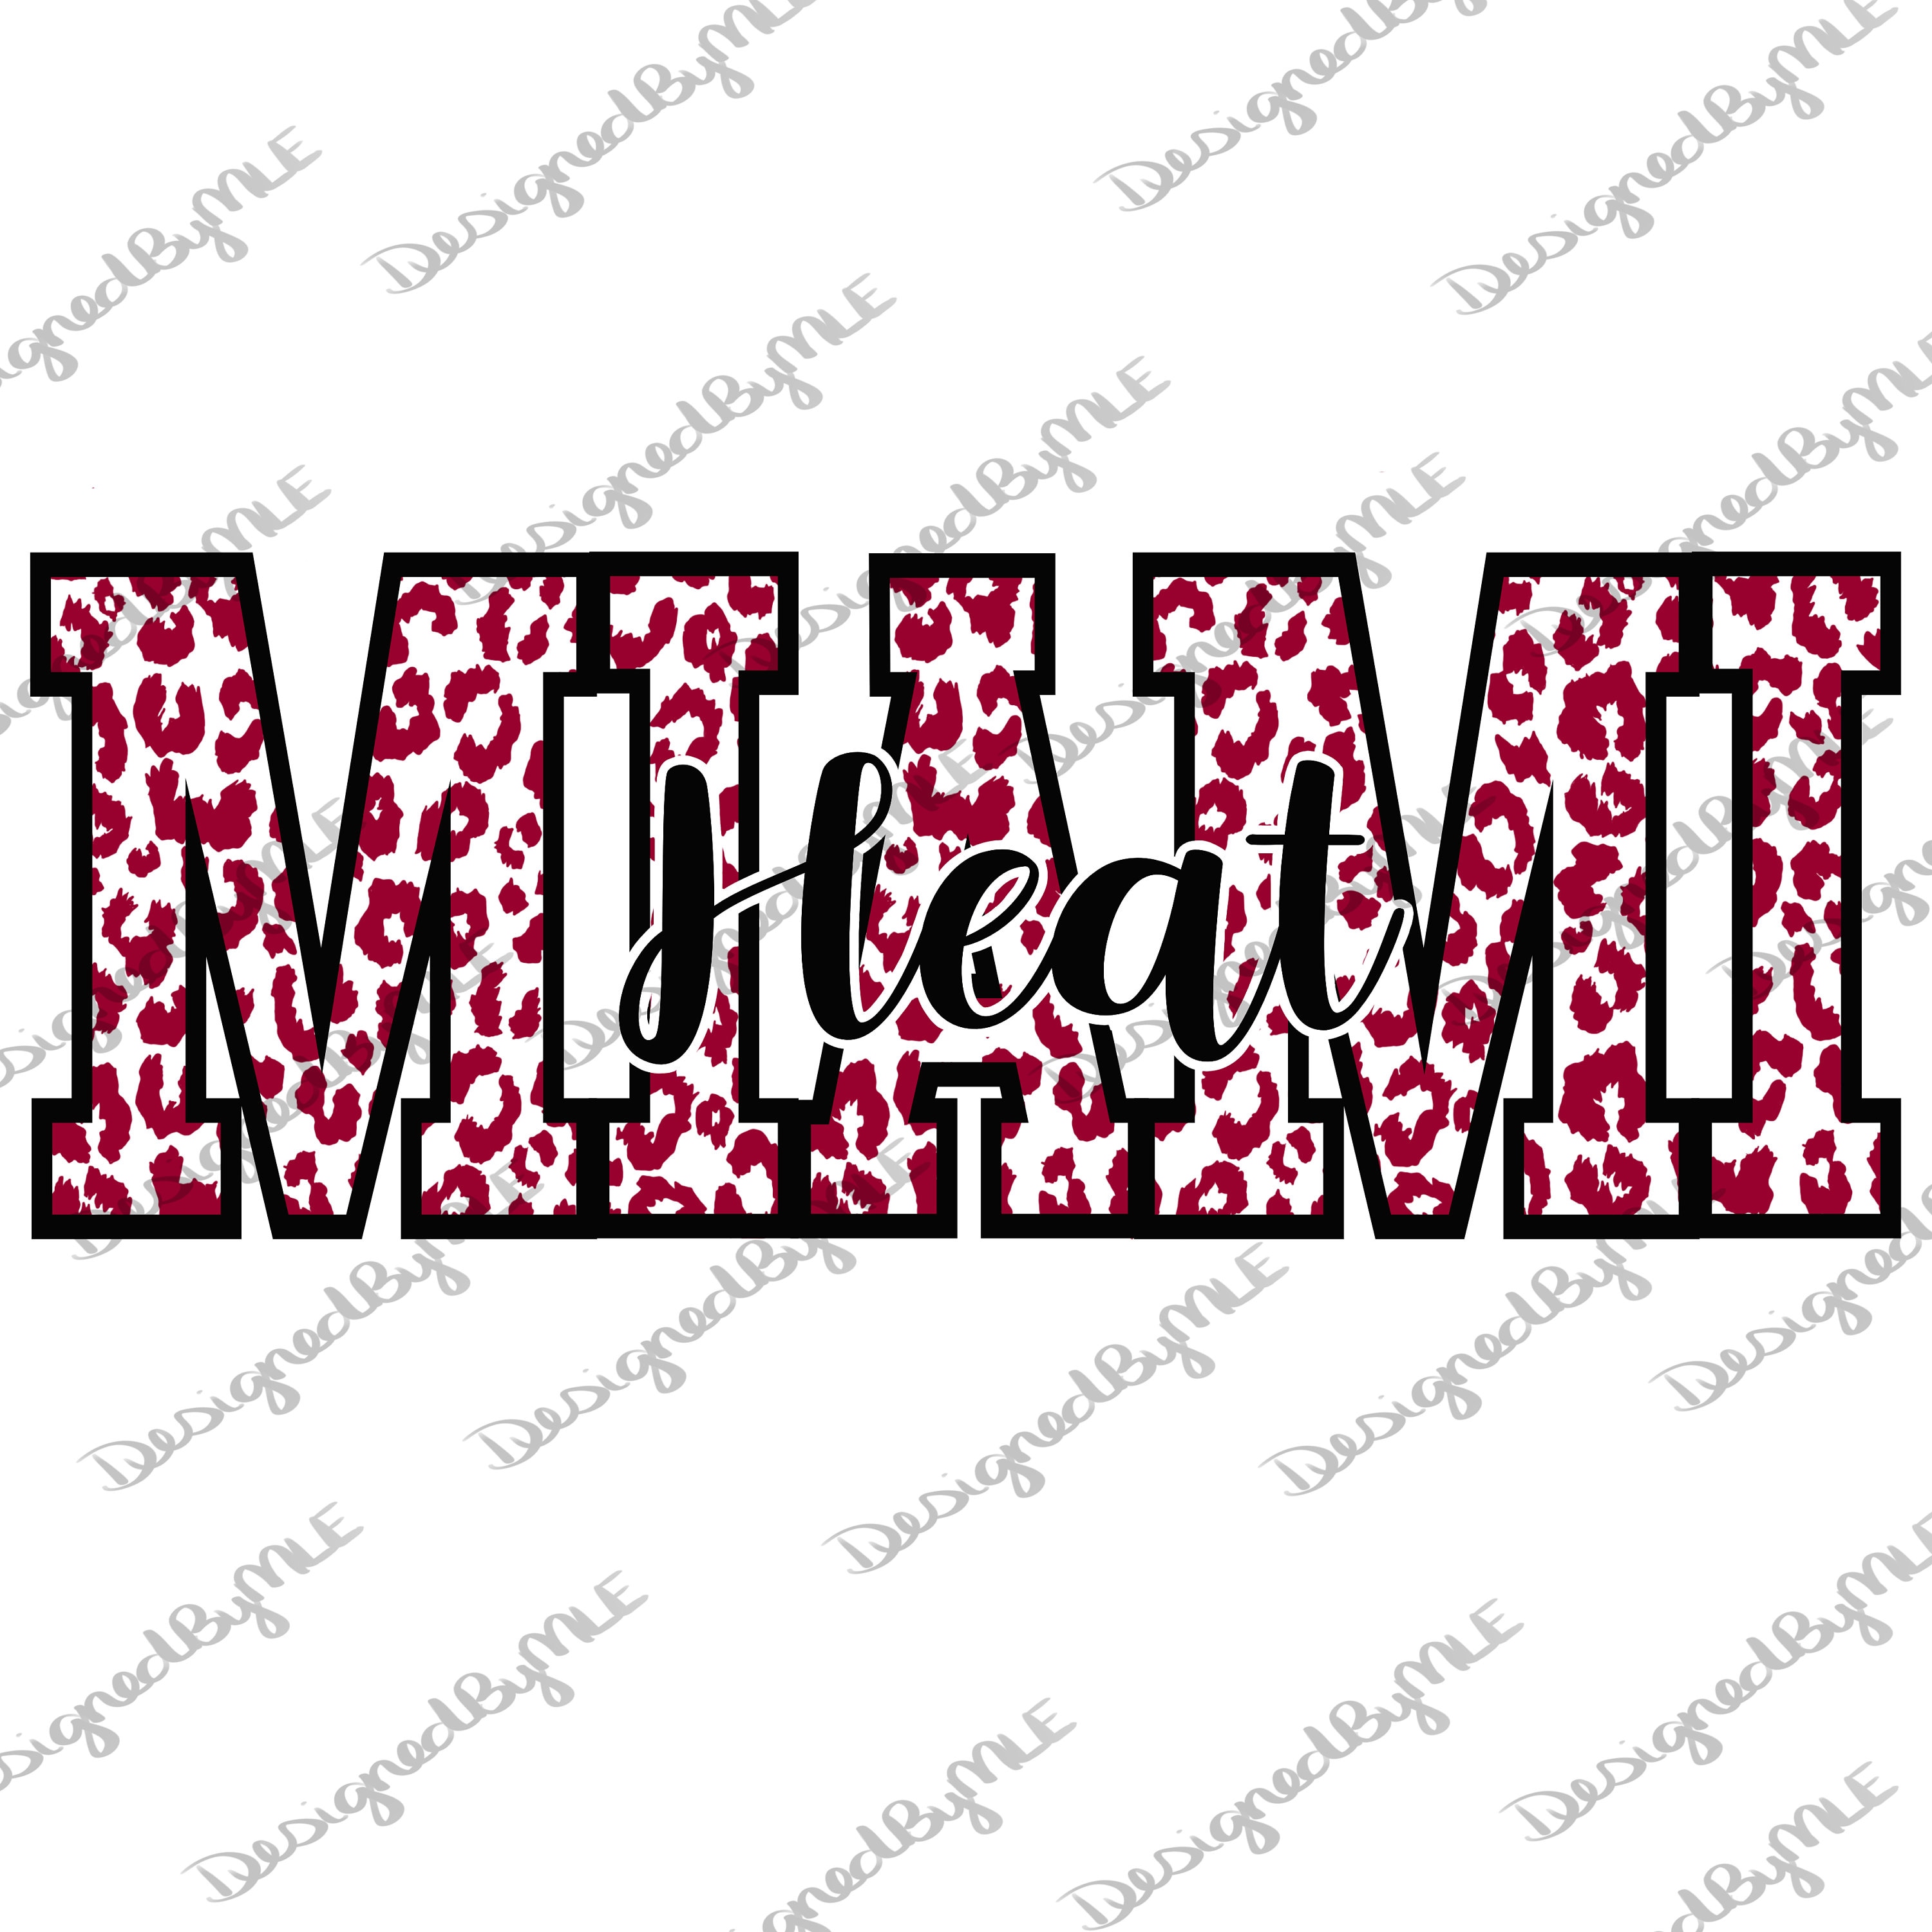 Miami Heat Southeast Division Champions SVG Graphic Design File